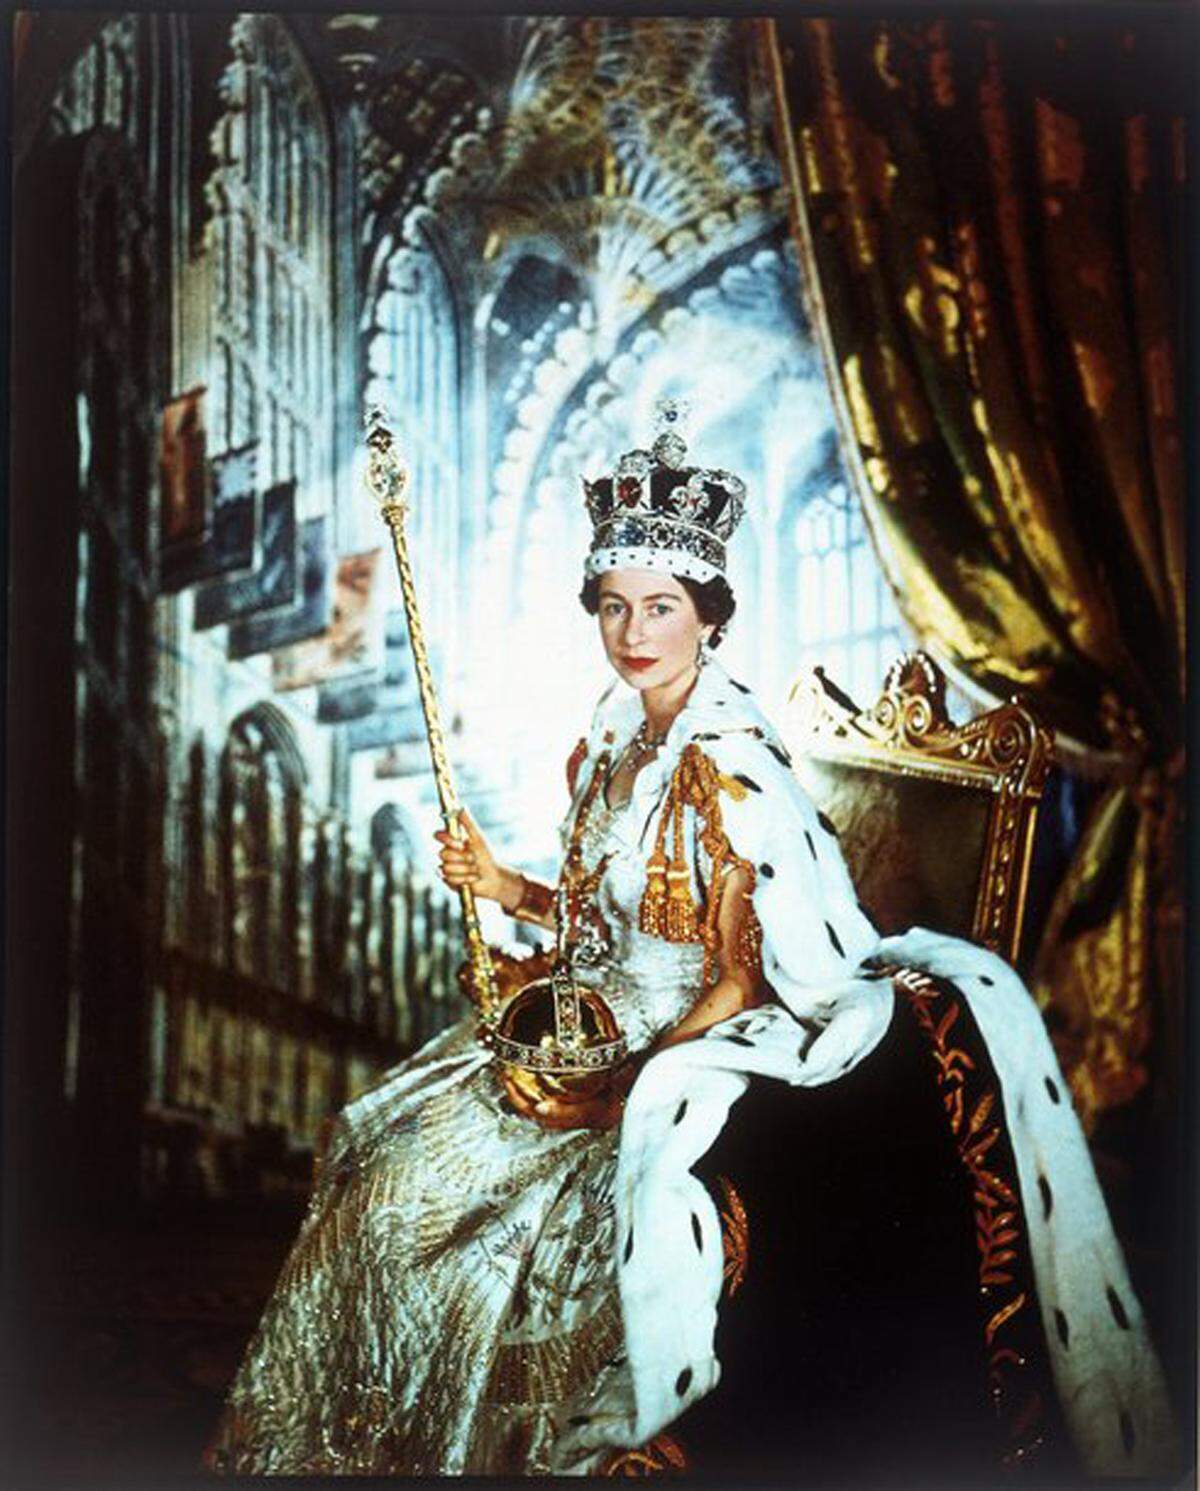 Am Todestag ihres Vaters König Georg VI, dem 6. Februar 1952, wurde Elizabeth vom Thronfolgerat als Königin proklamiert. Erst 16 Monate später, am 2. Juni 1953, fand die Krönung in der Westminster Abbey statt. Queen Elizabeth II in ihrer Krönungsrobe im Juni 1953, fotografiert von Cecil Beaton.